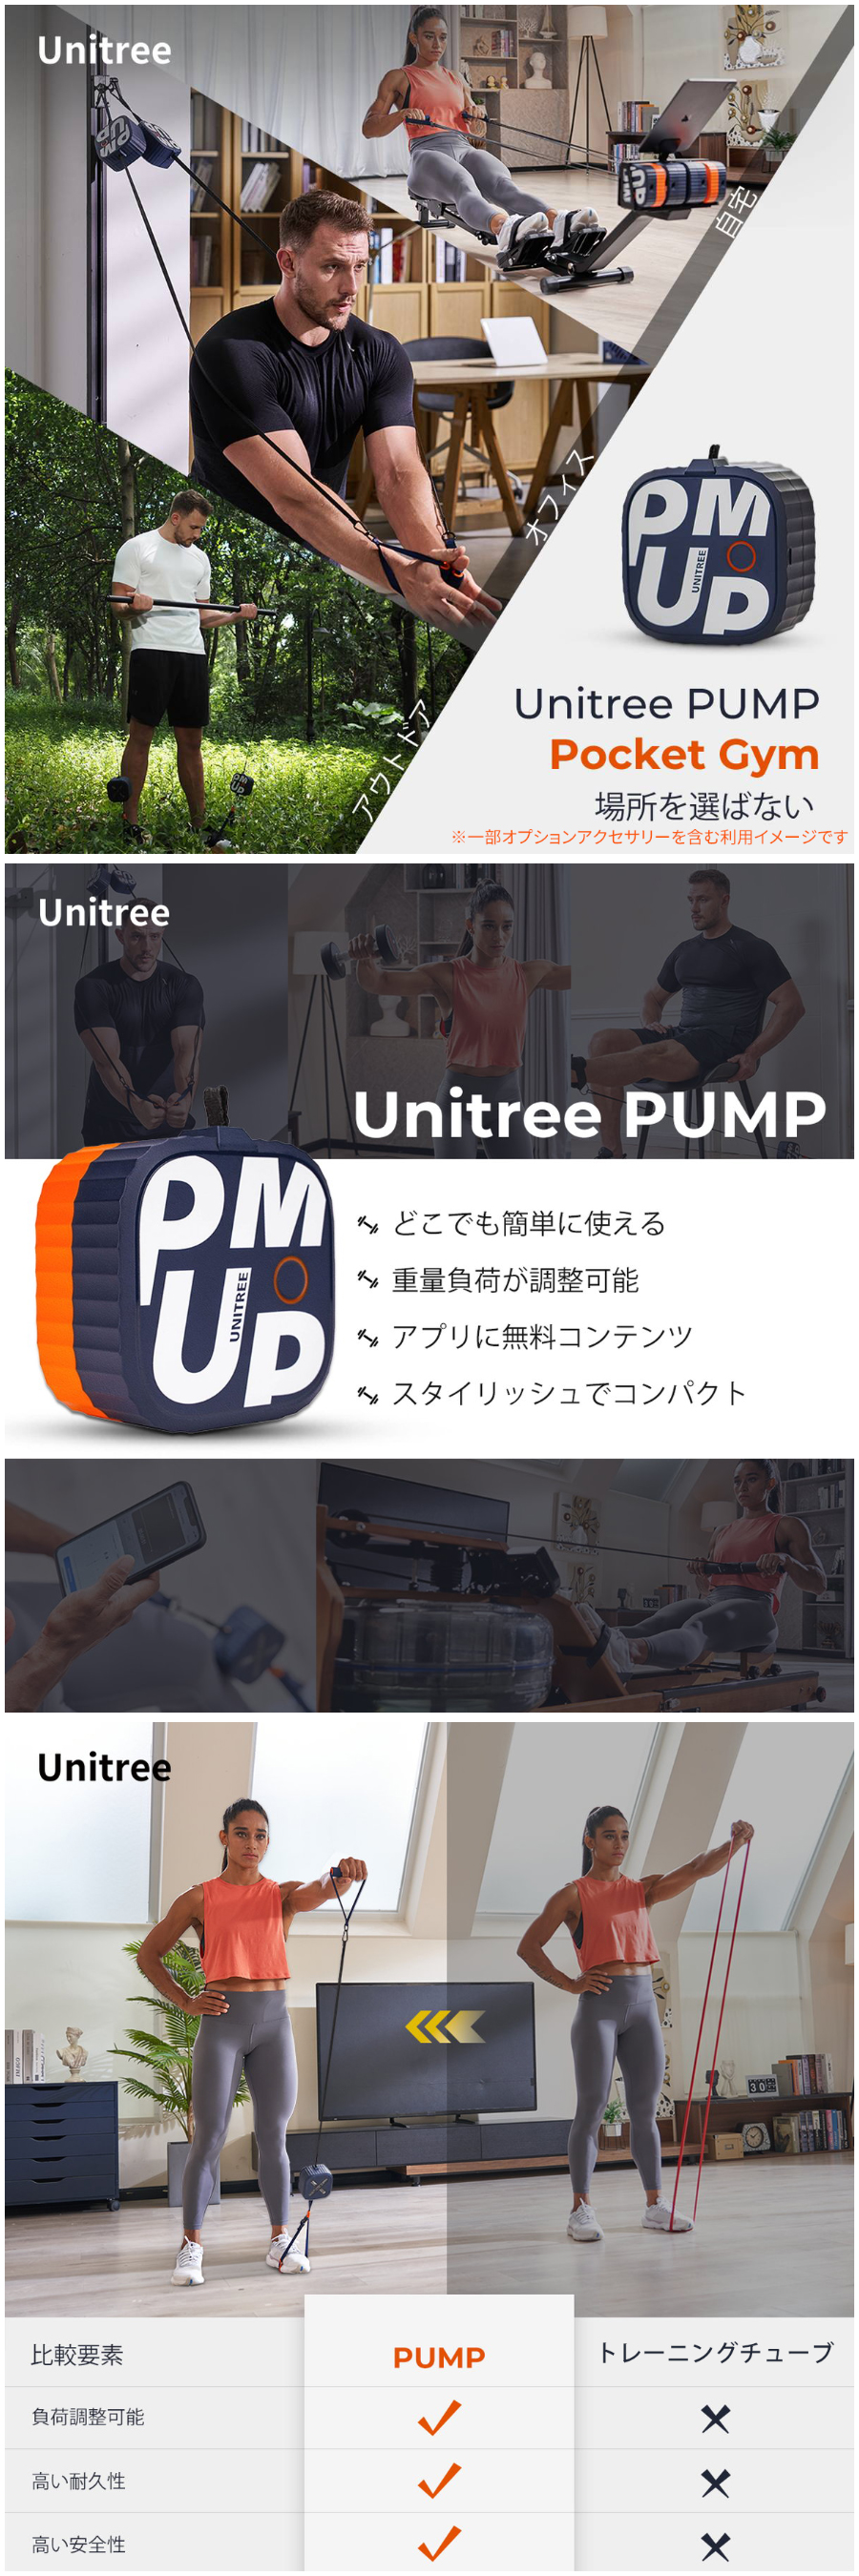 Unitree PUMP PRO (ユニツリー パンプ プロ)【最大負荷20kg】筋トレ